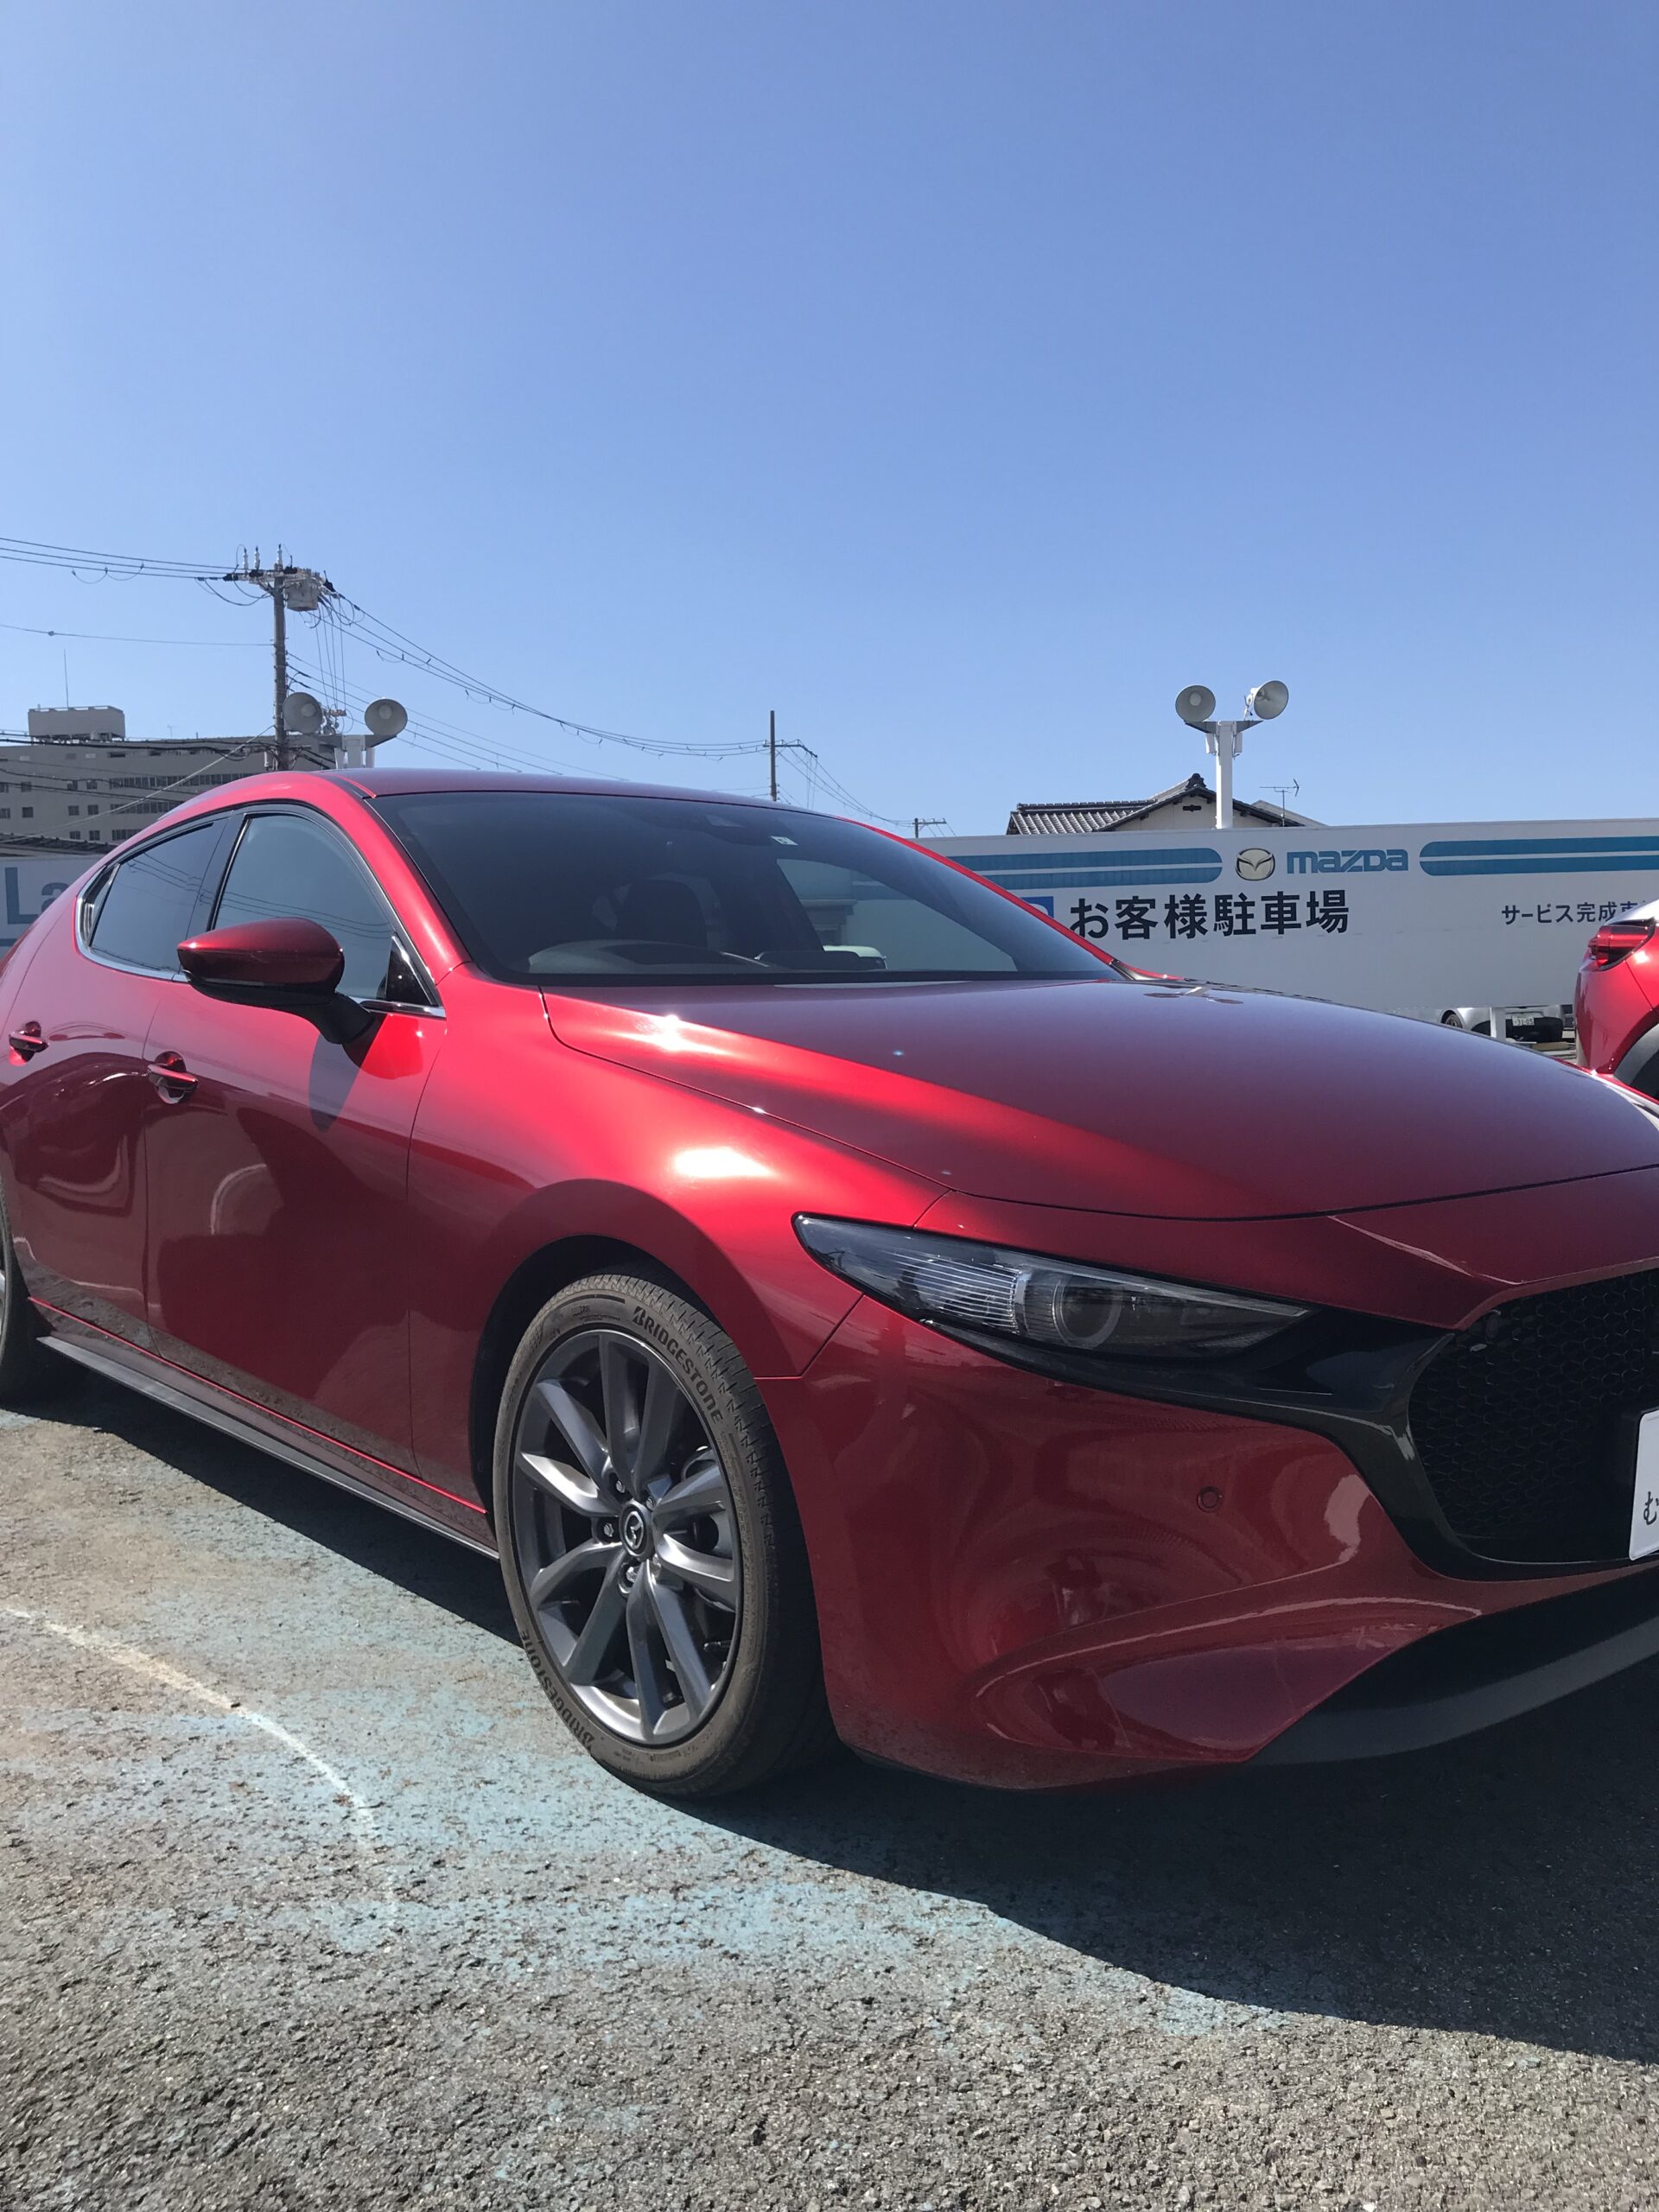 人気試乗車 Mazda3 Xd Lpackage 和歌山でマツダ車のご用命は株式会社和歌山マツダへ